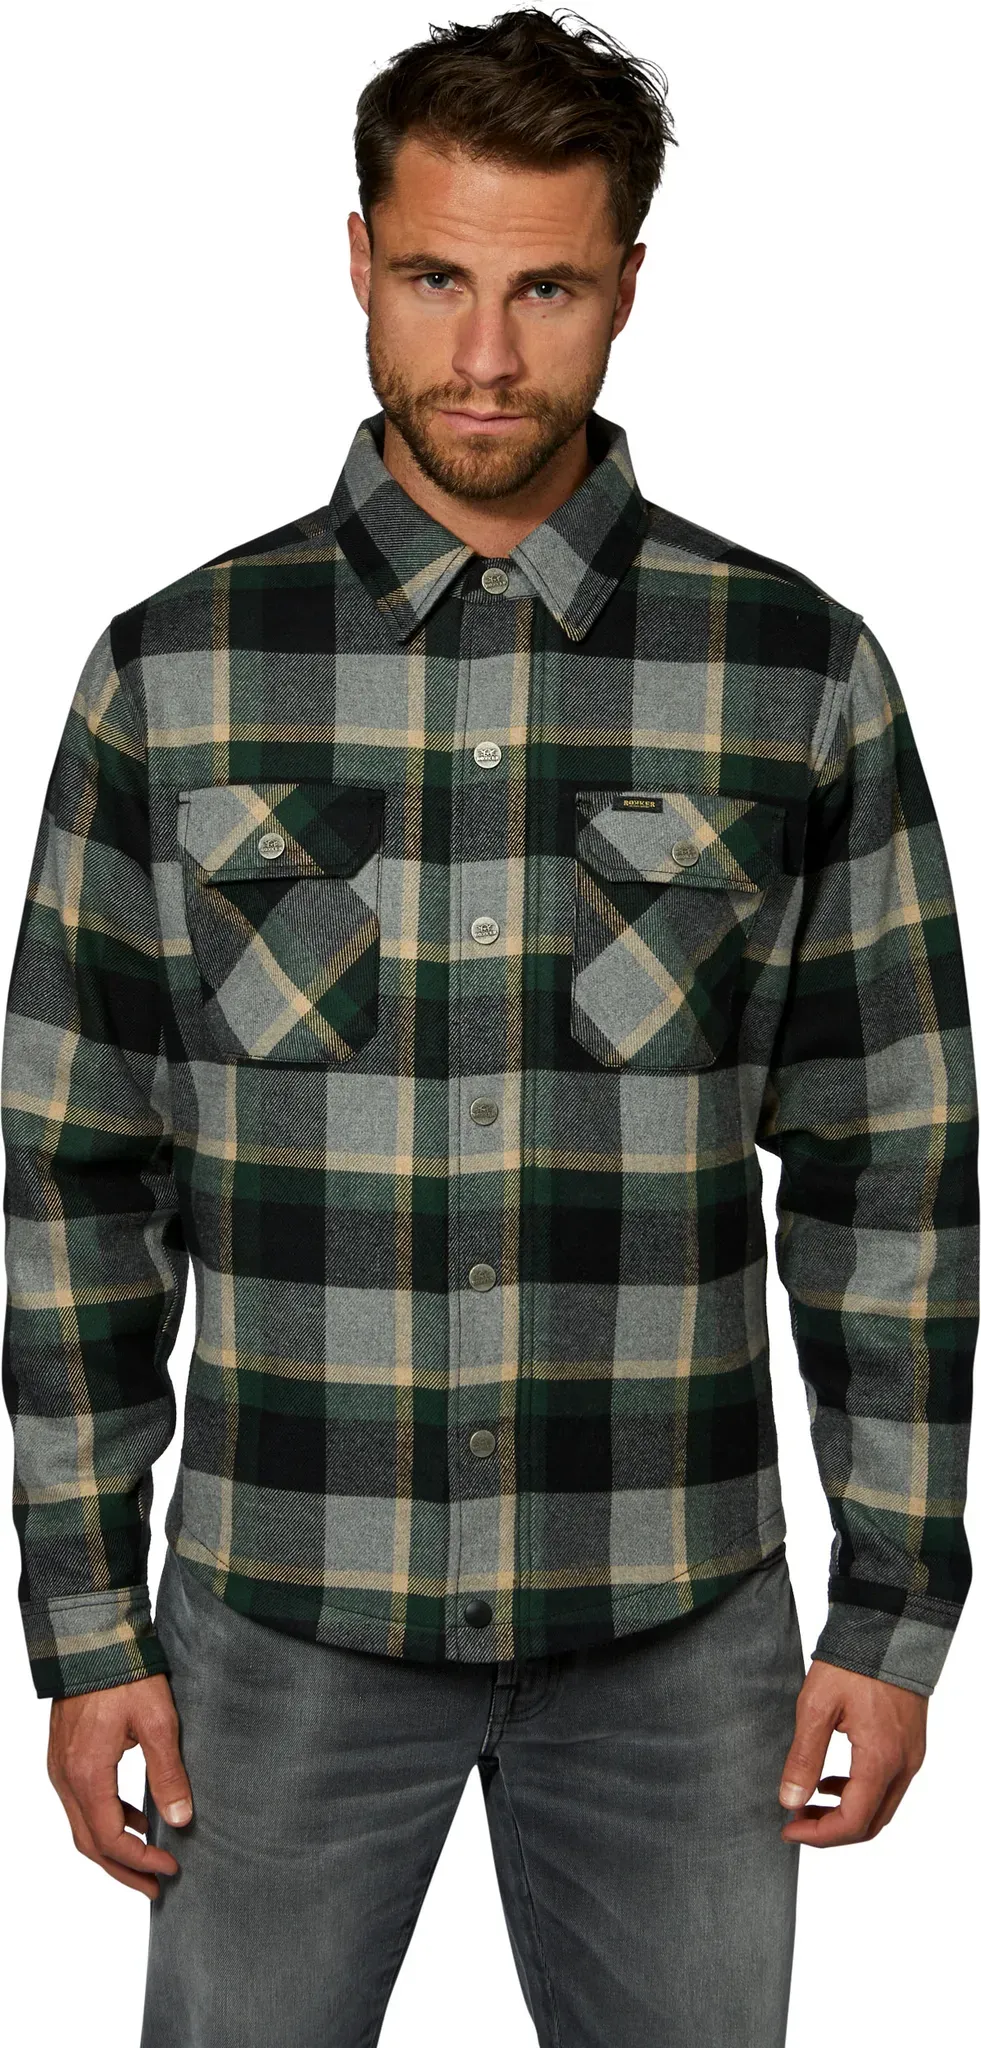 Rokker Memphis Green, chemise/veste textile - Gris/Noir/Vert Foncé - S